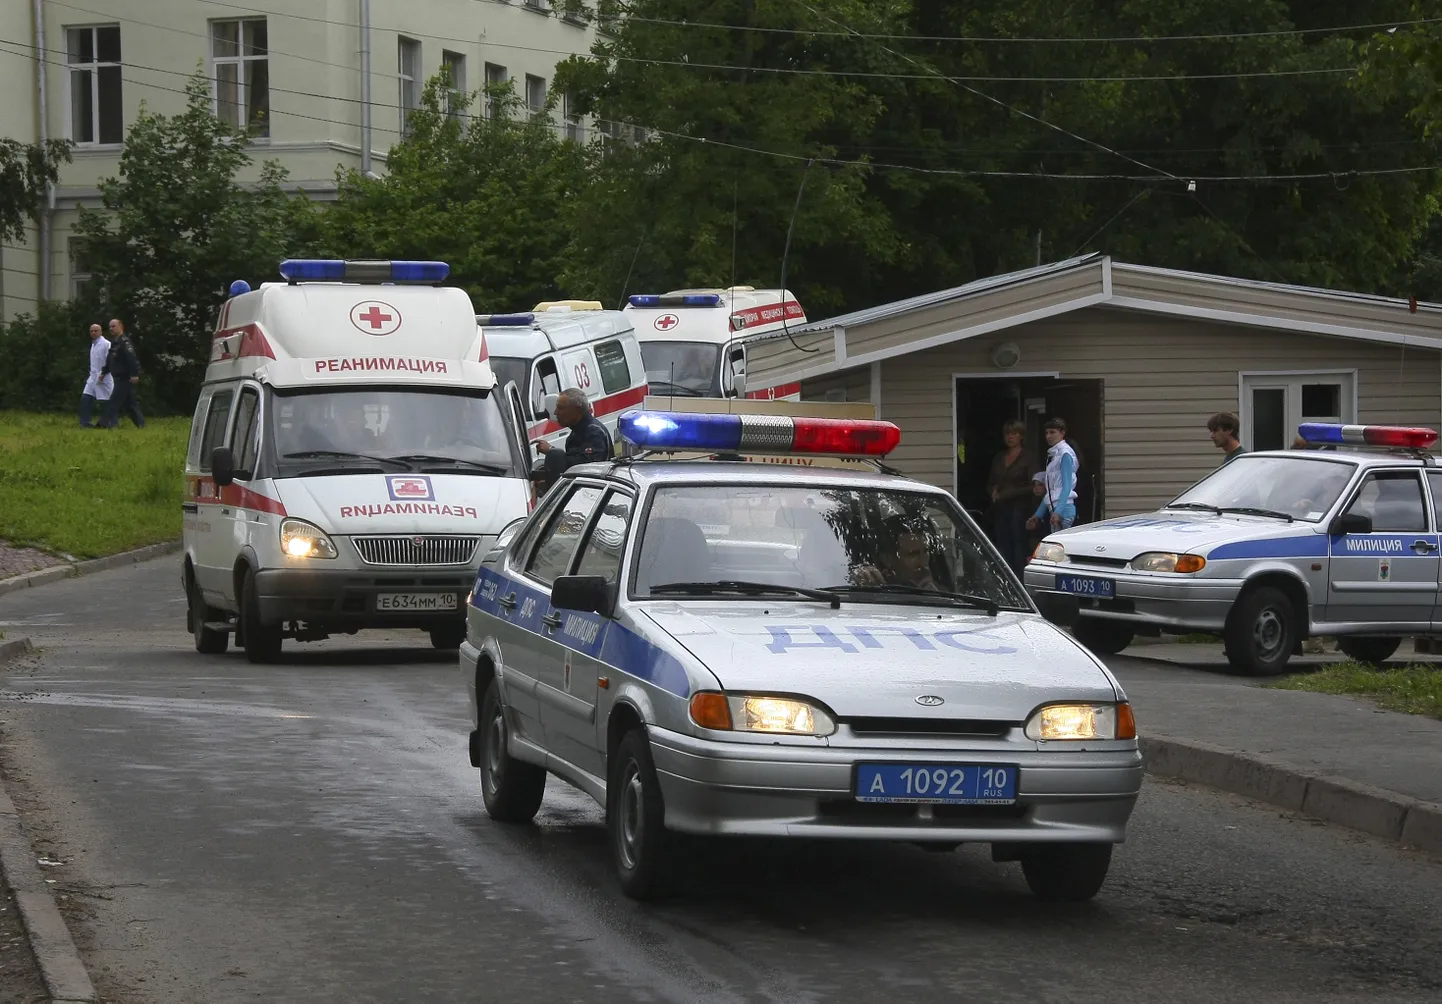 Politsei- ja kiirabiautod Venemaal. Foto pole kõnealuse juhtumiga seotud.